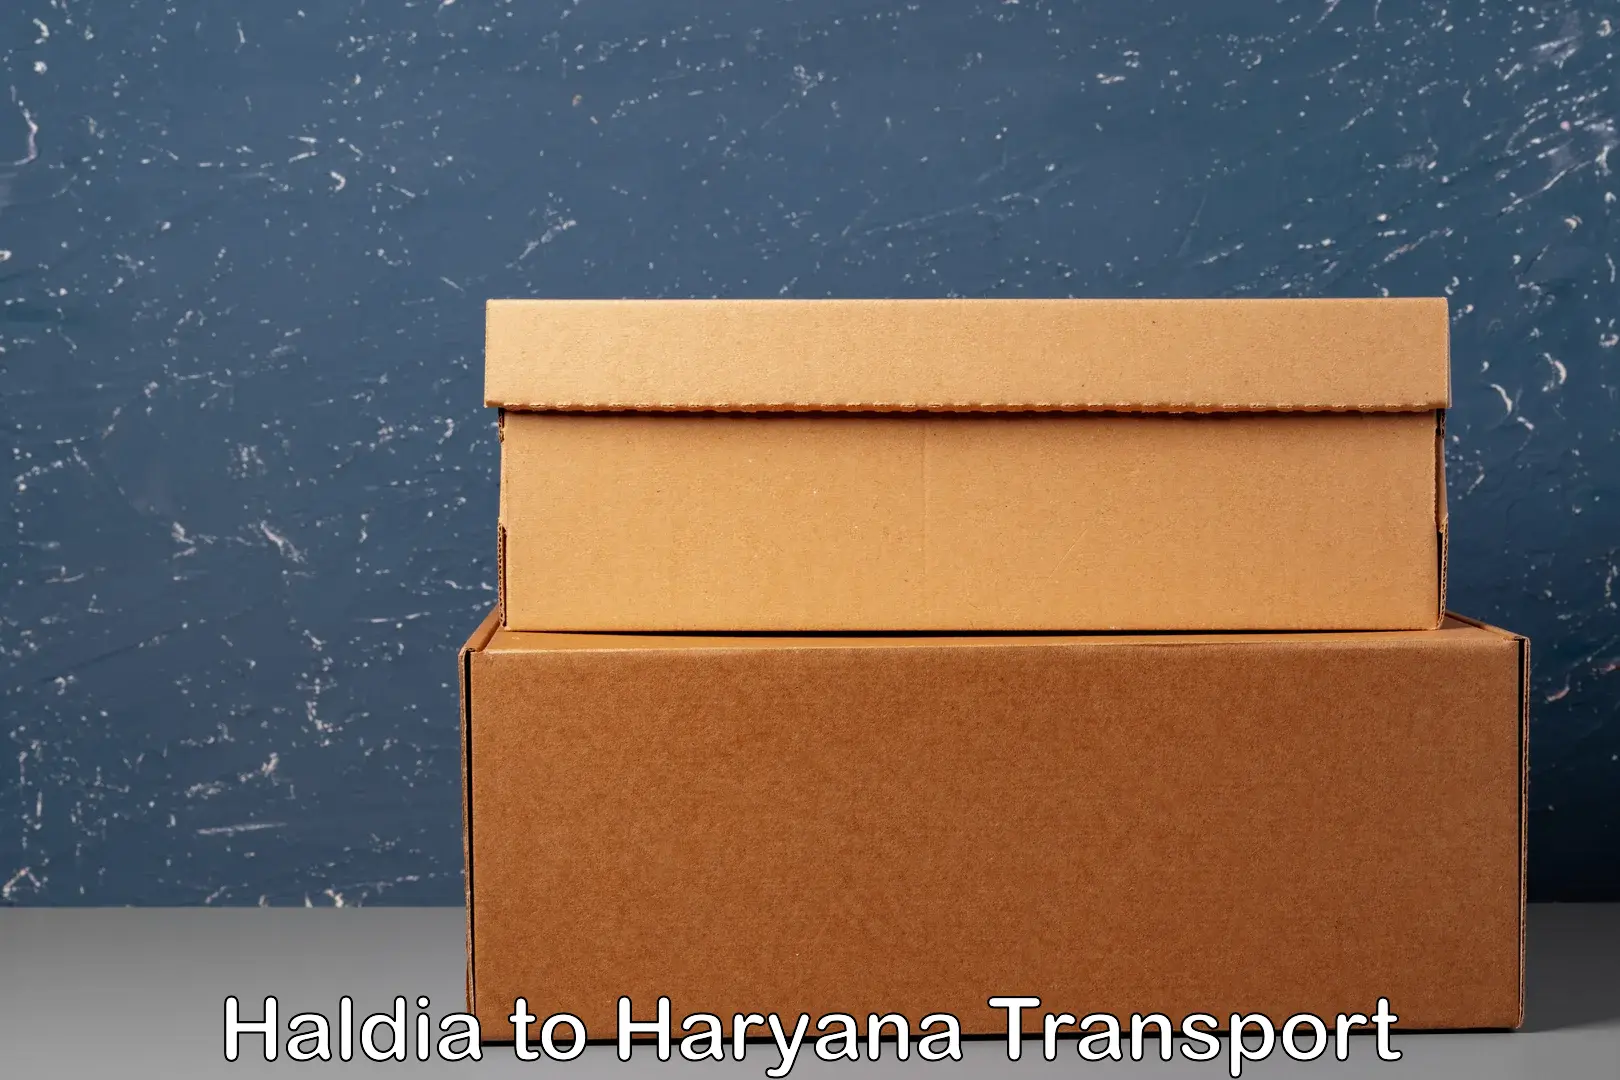 Shipping partner Haldia to Haryana